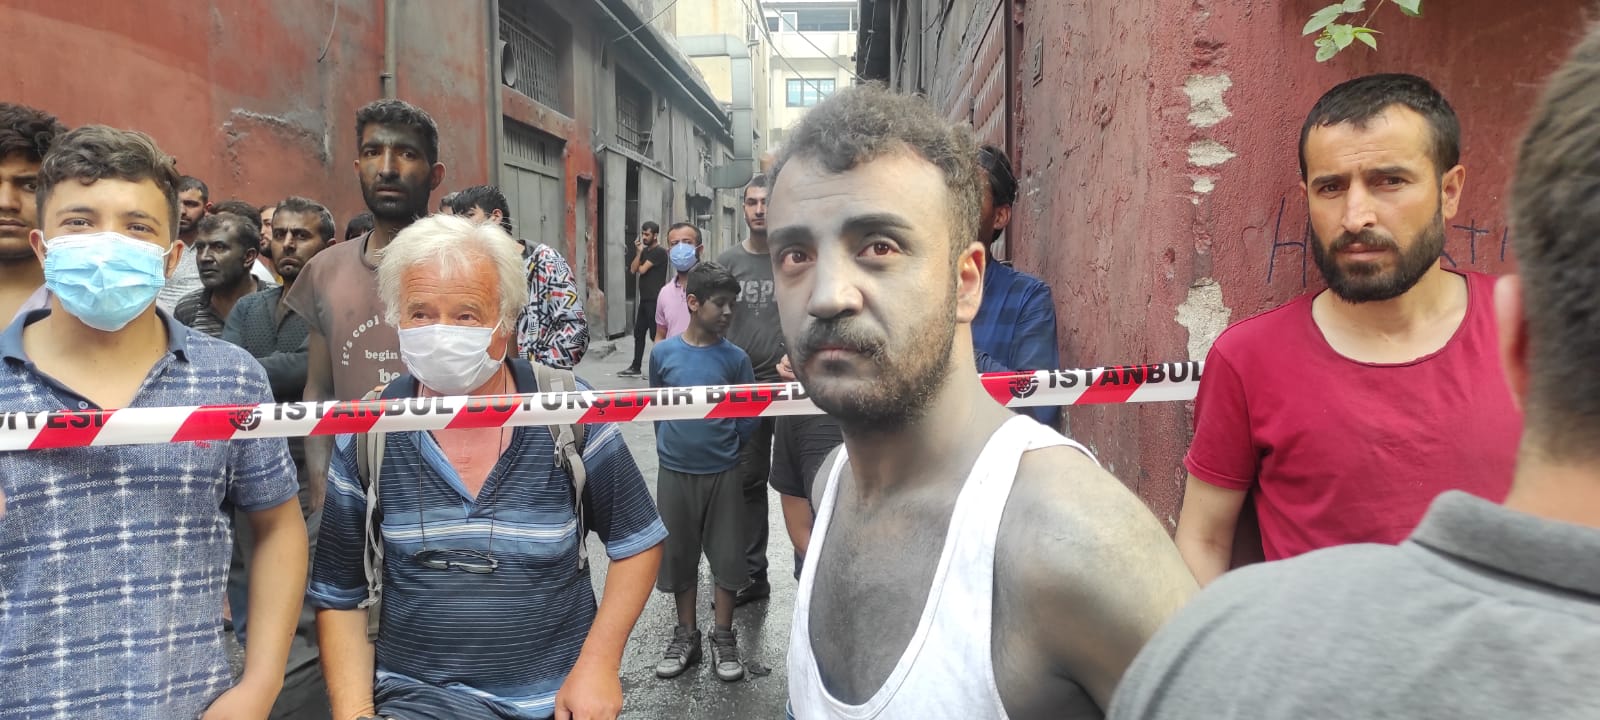 İstanbul’da sanayi sitesinde patlama